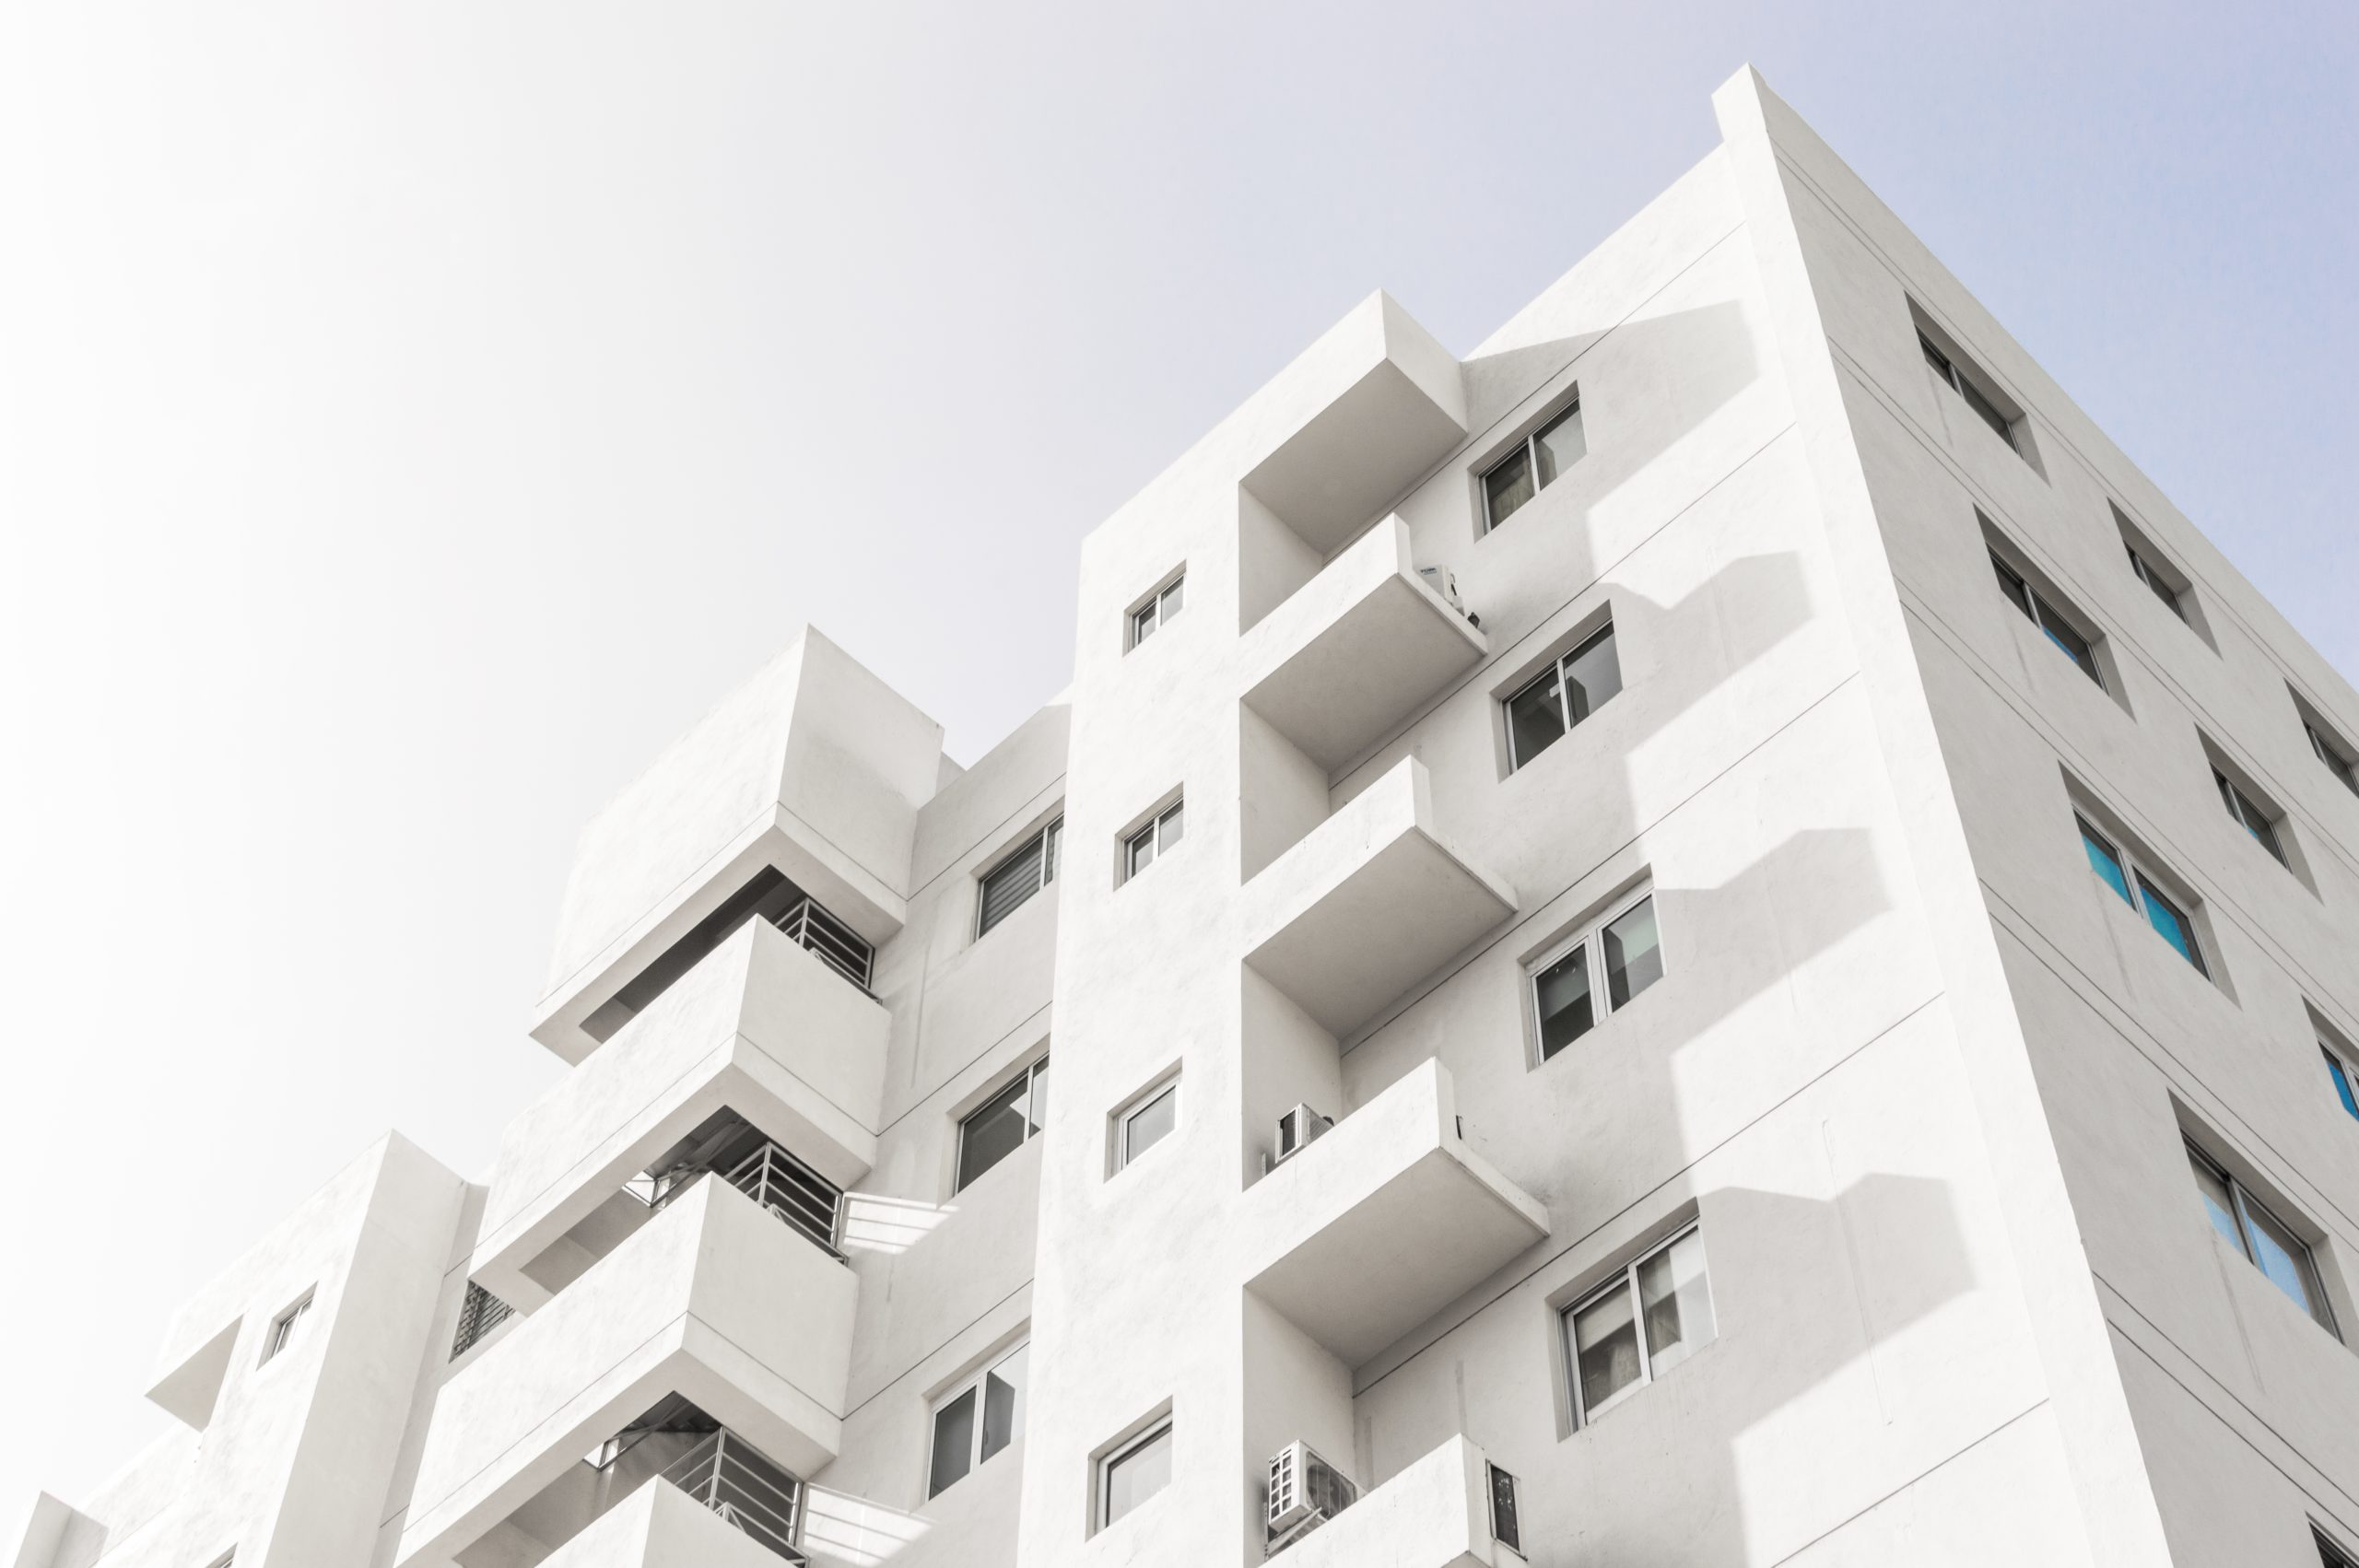 comprar apartamento: fachada de um prédio residencial branco